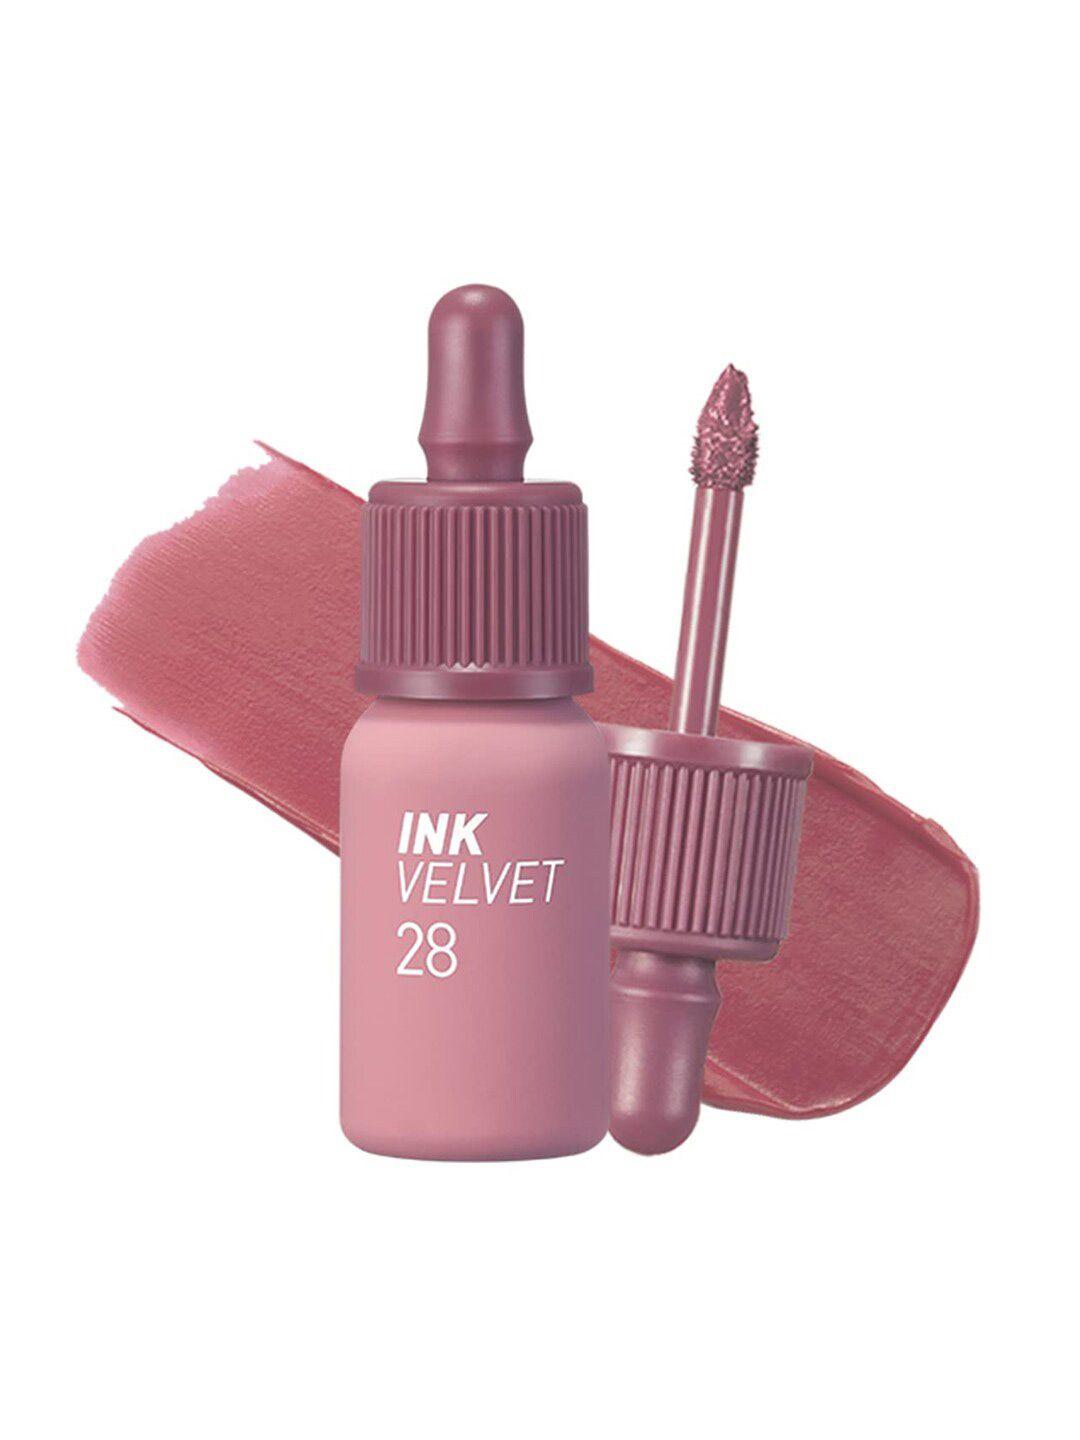 peripera ink velvet long-lasting liquid lipstick - mauveful nude 28